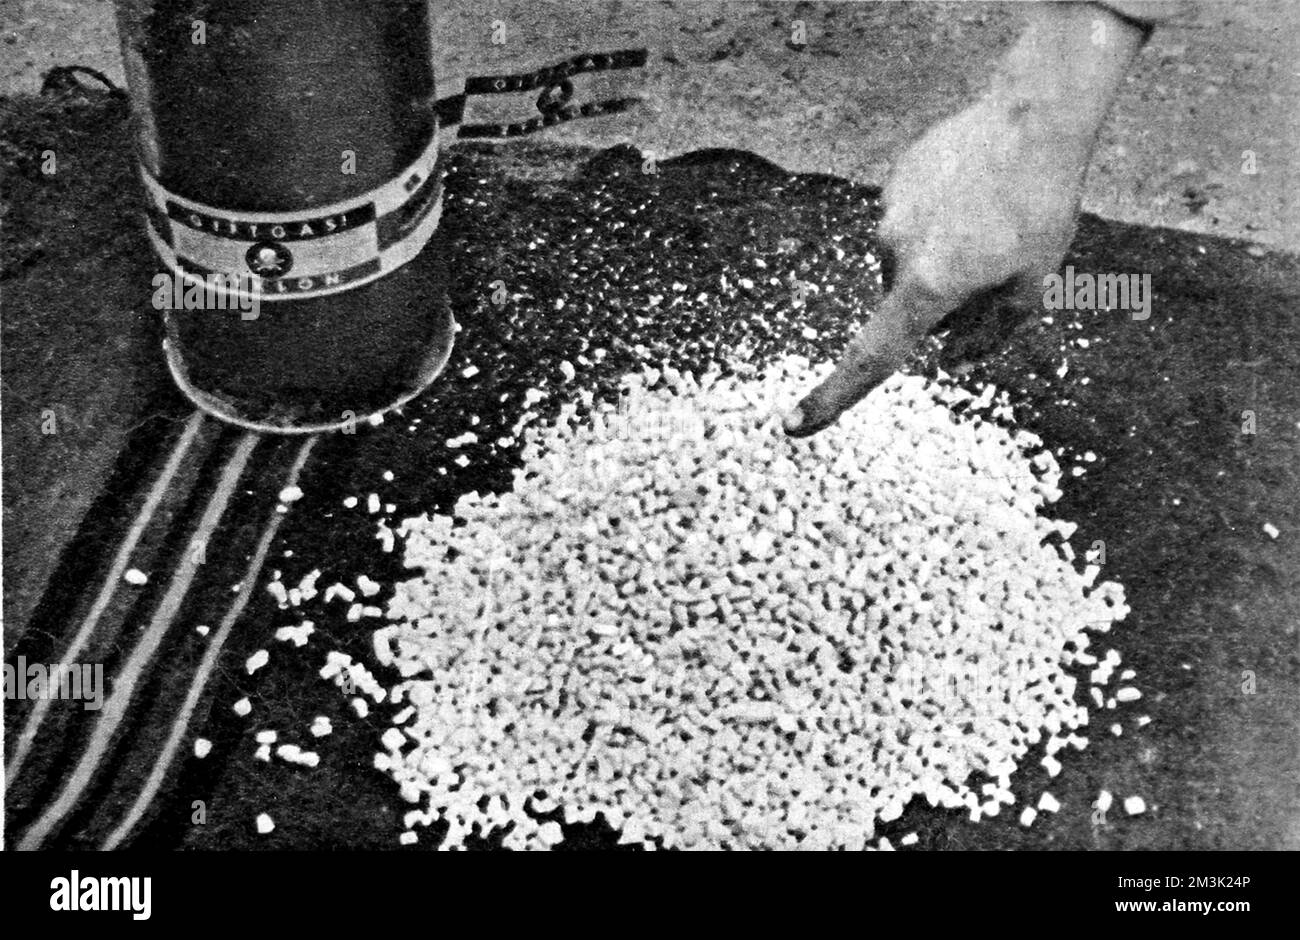 Alcuni cristalli di Zyklon-B catturati al campo di concentramento di Majdanek, vicino Lublino, Polonia, 1944. Majdanek fu gestito come campo di concentramento dalle Waffen-SS tra il 1941 e il 1944. Anche se i tedeschi tentarono di distruggere le prove delle loro atrocità nel campo, c'era troppo da nascondere e l'esercito russo catturò gran parte del campo intatto. Data: 1944 Foto Stock